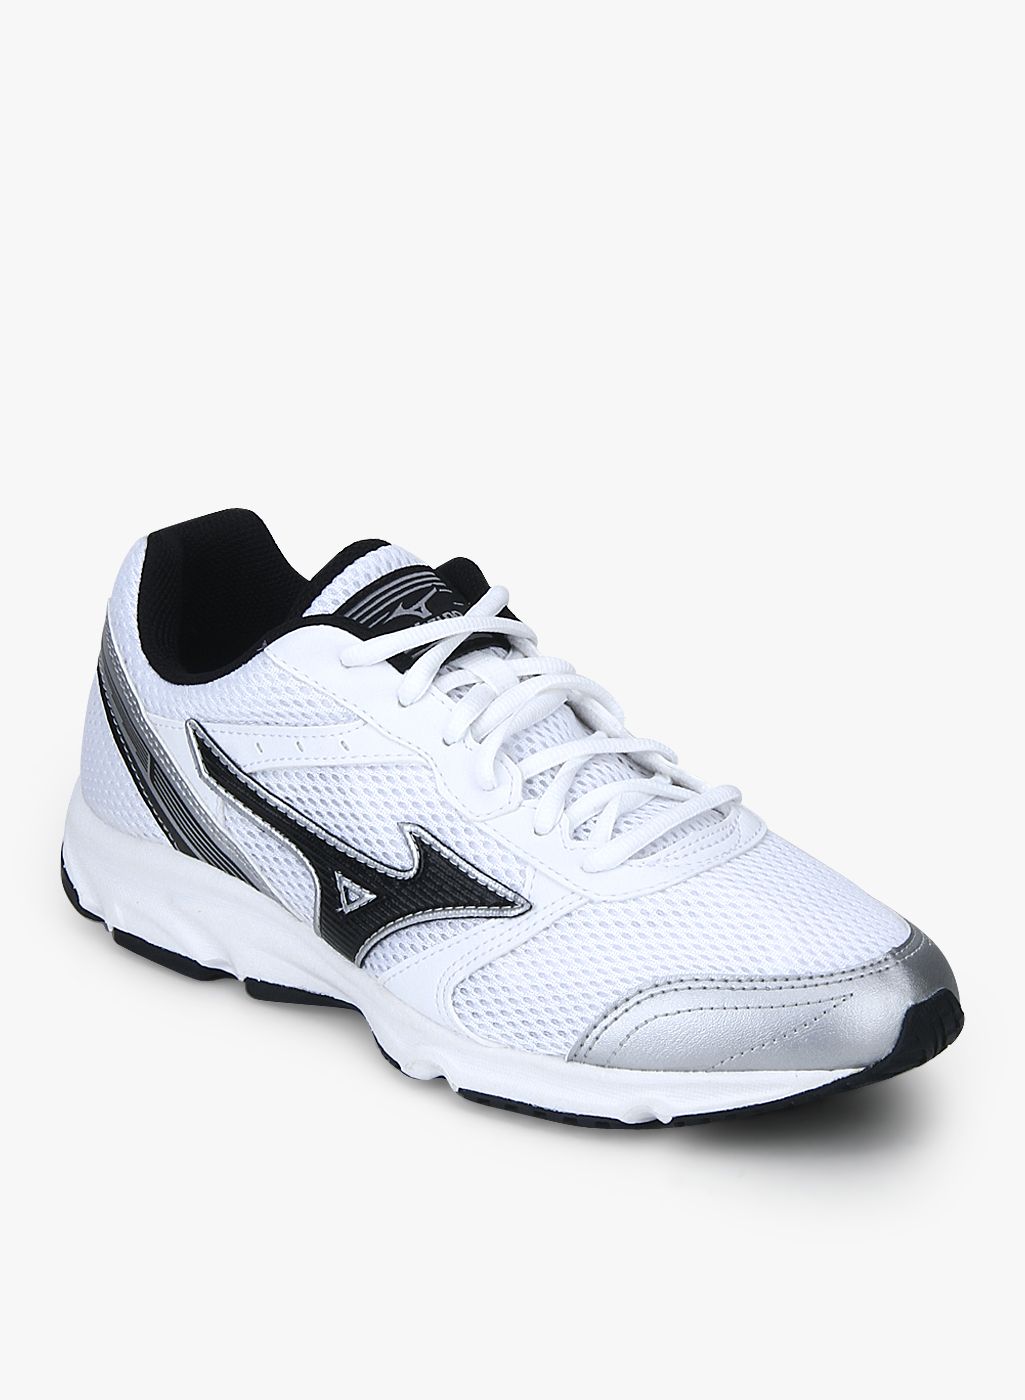 white mizuno running shoes